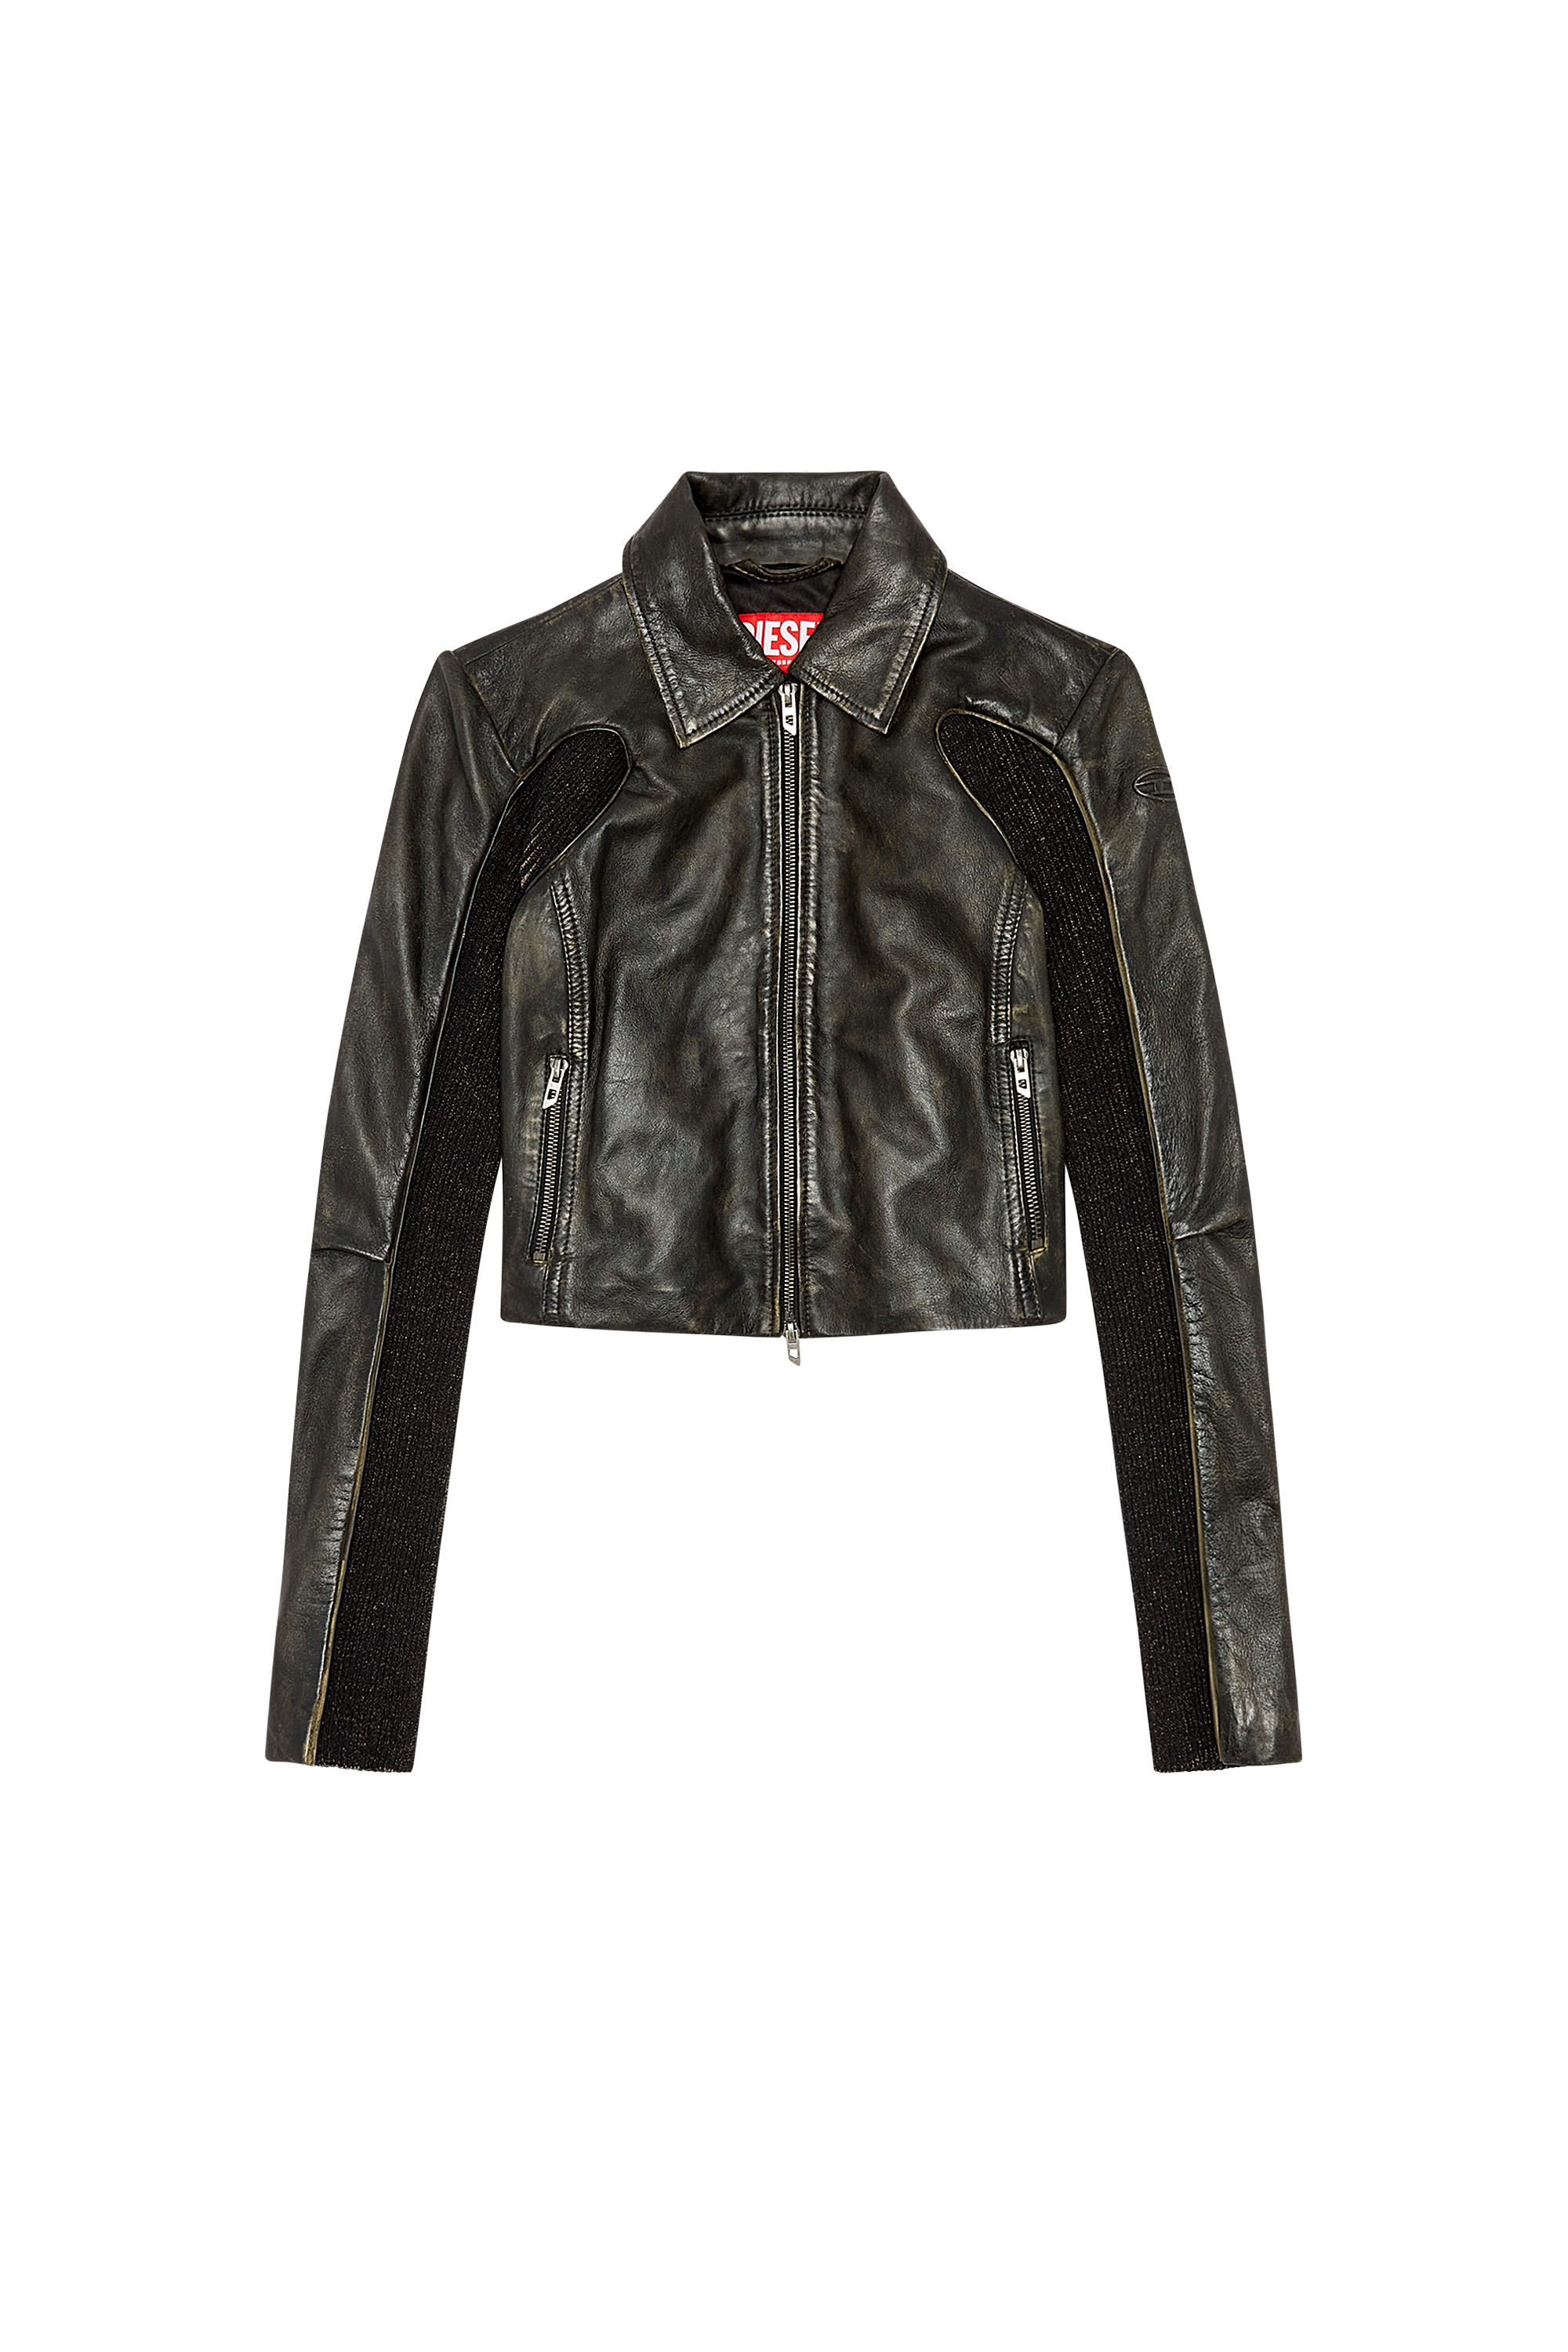 Women's Leather Jackets: Bomber, Biker, Cropped | Diesel